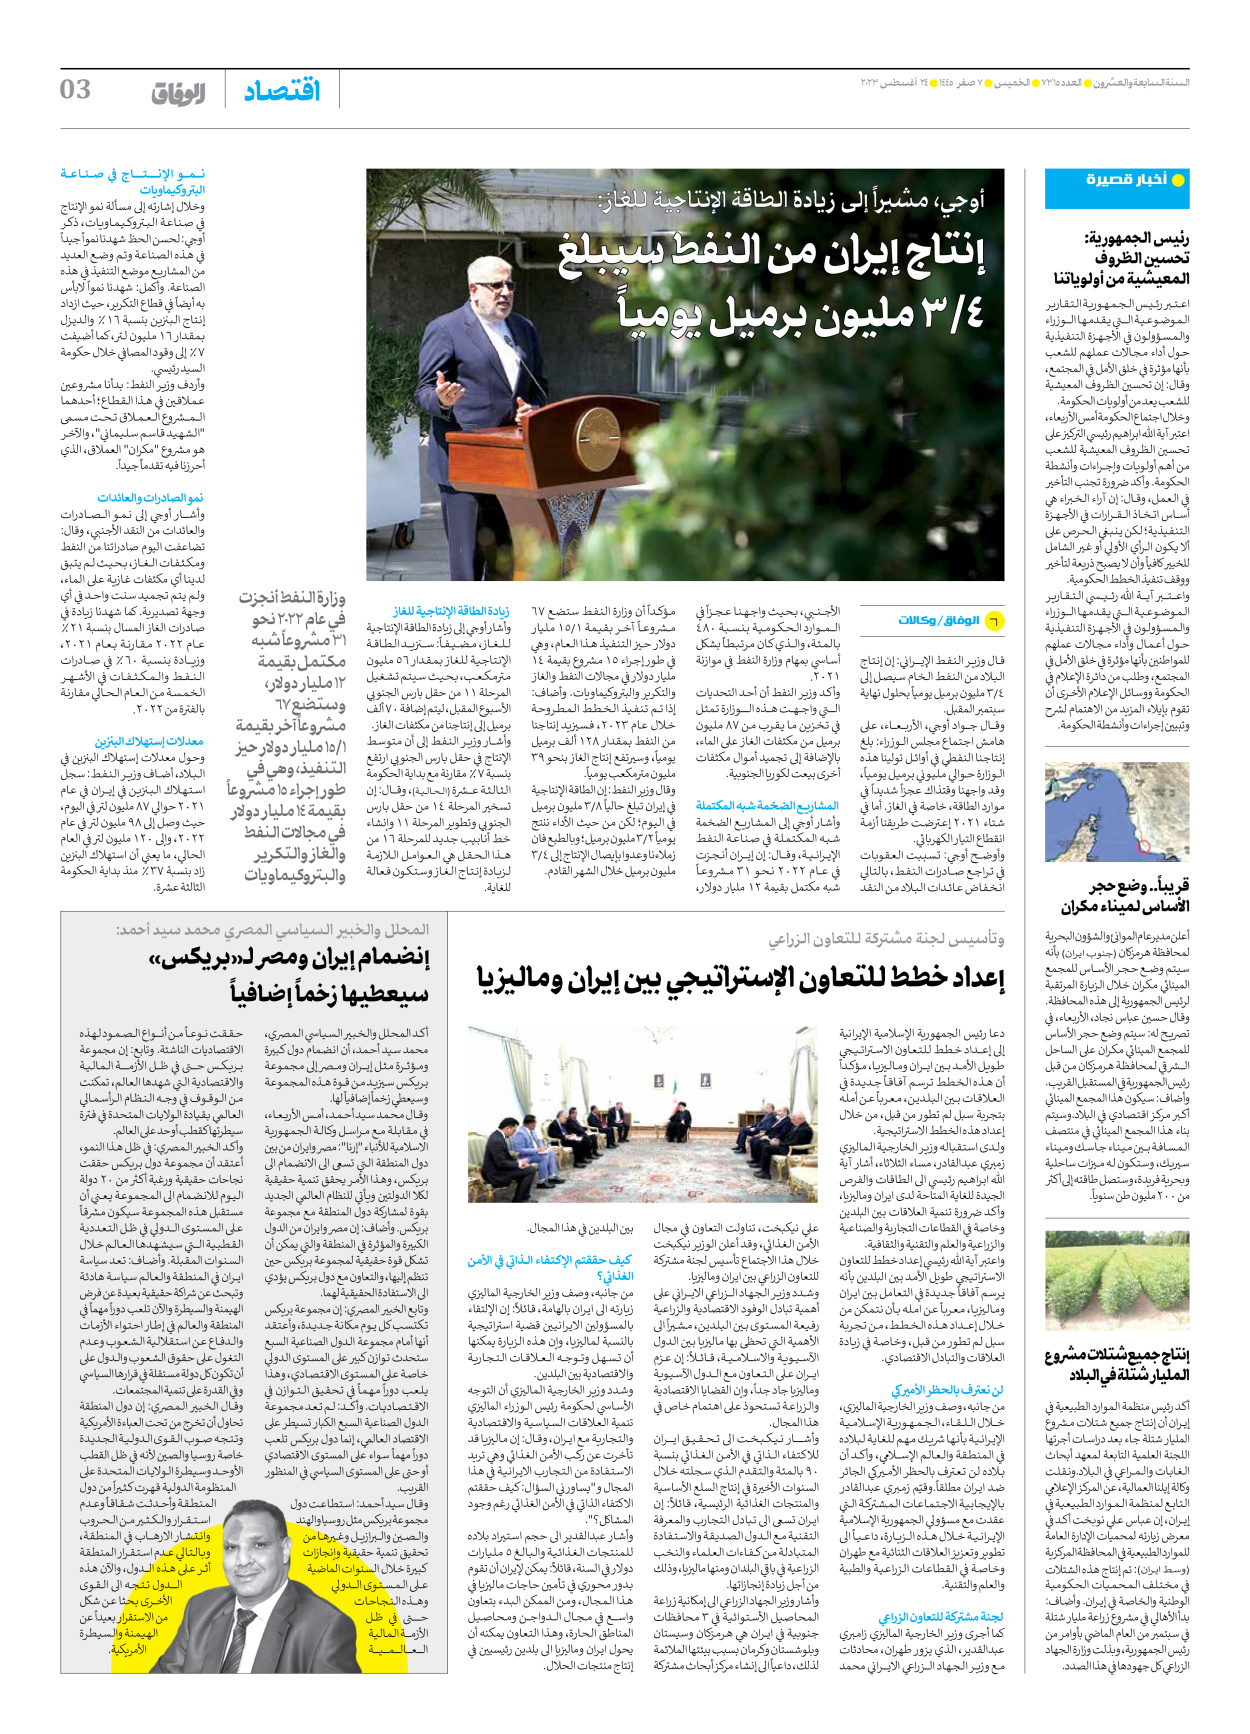 صحیفة ایران الدولیة الوفاق - العدد سبعة آلاف وثلاثمائة وخمسة عشر - ٢٤ أغسطس ٢٠٢٣ - الصفحة ۳